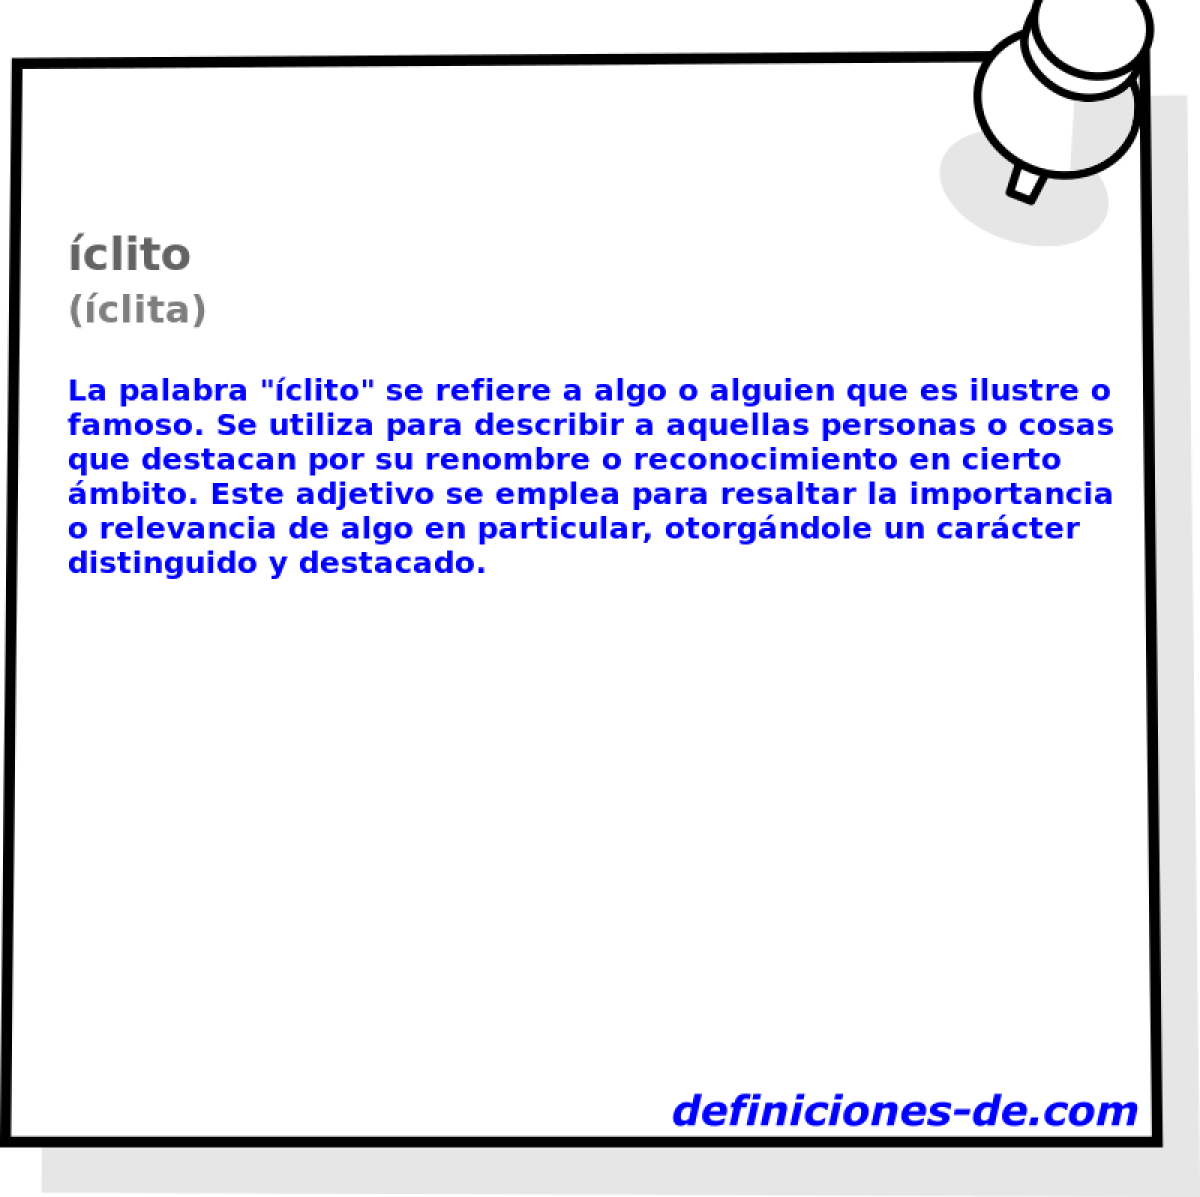 clito (clita)